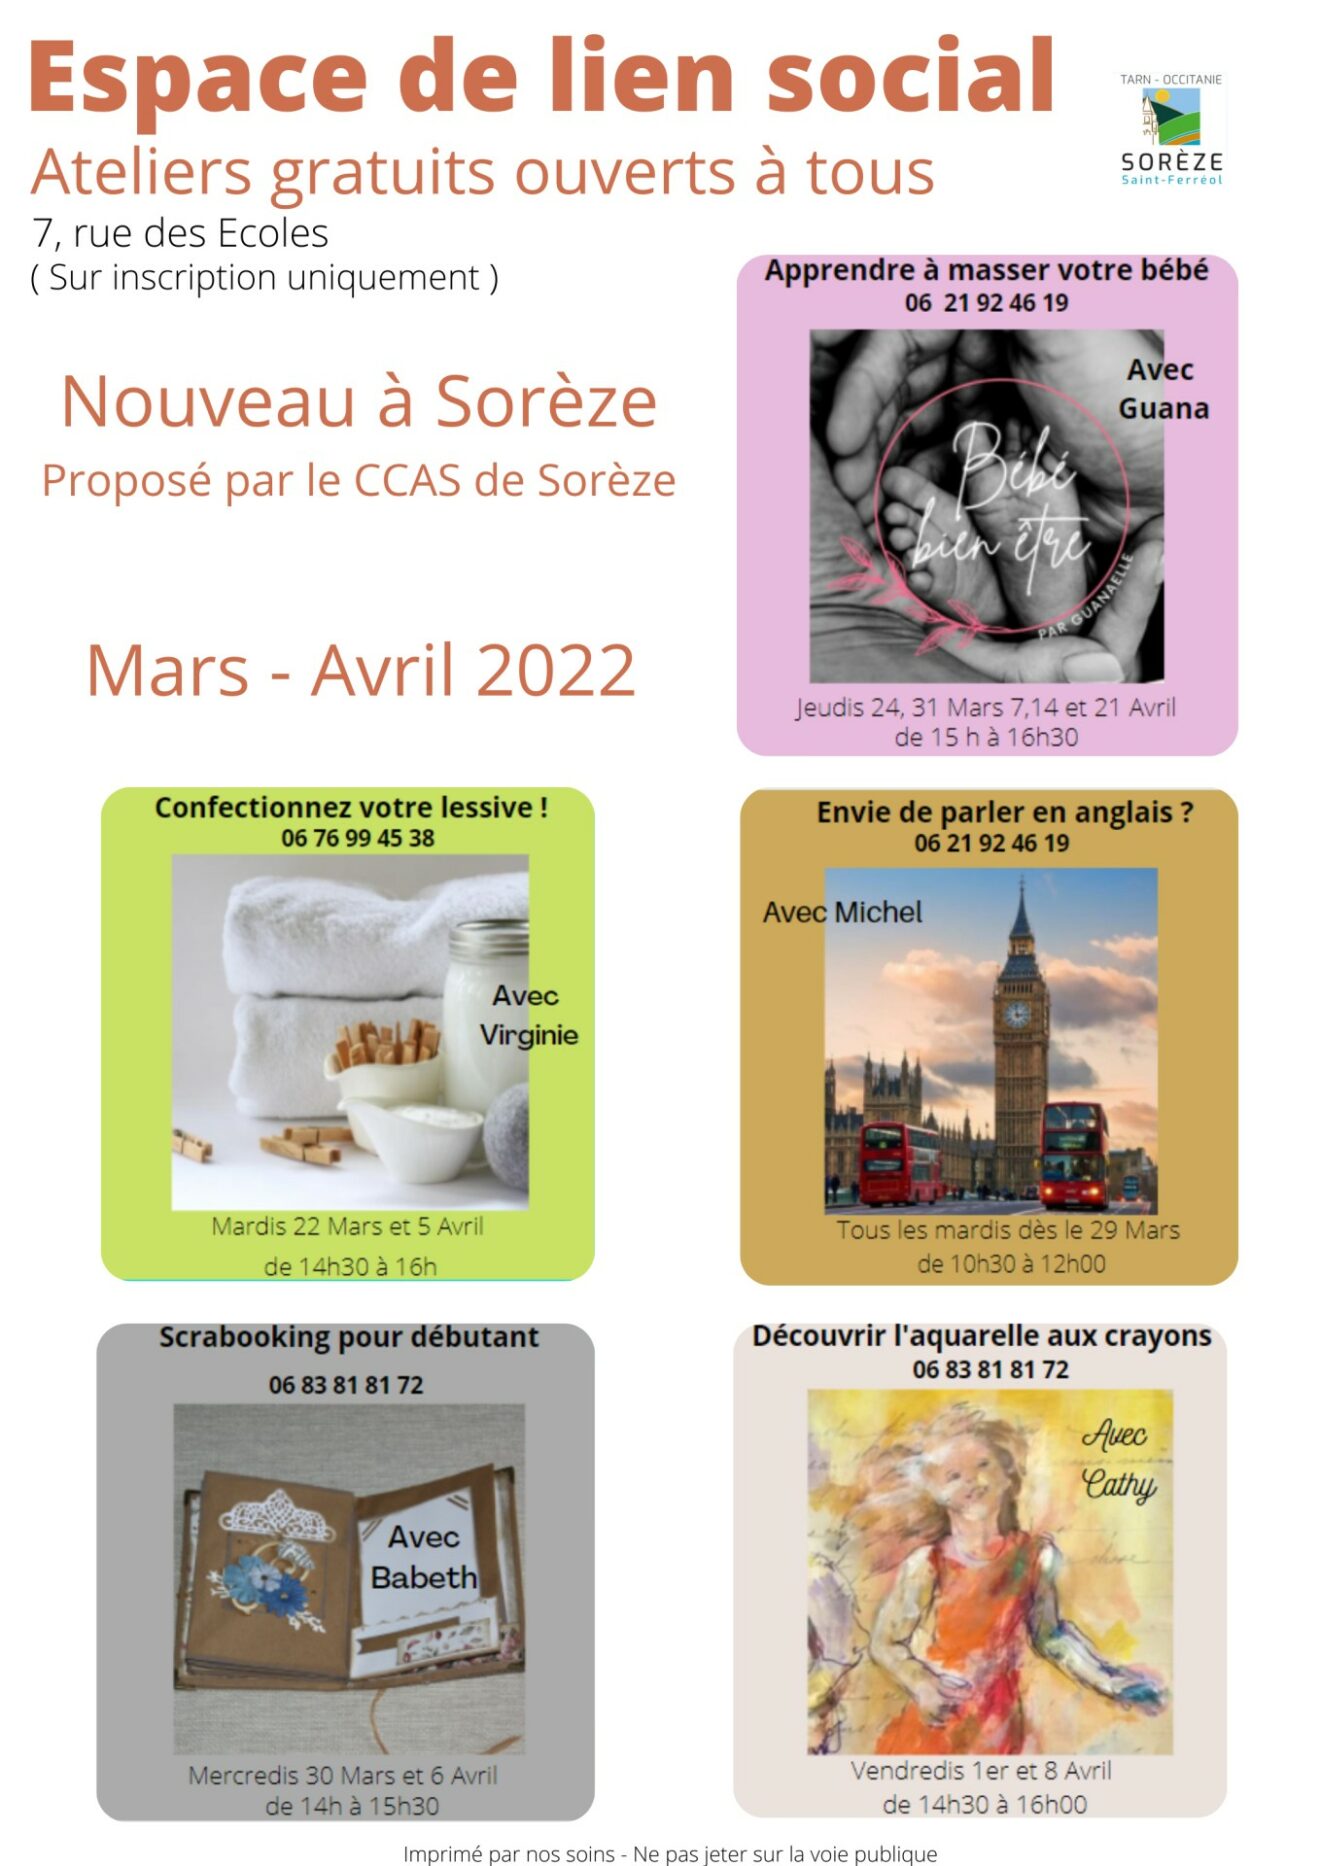 Un nouvel espace de lien social : fonctionnement et agenda mars/avril 2022